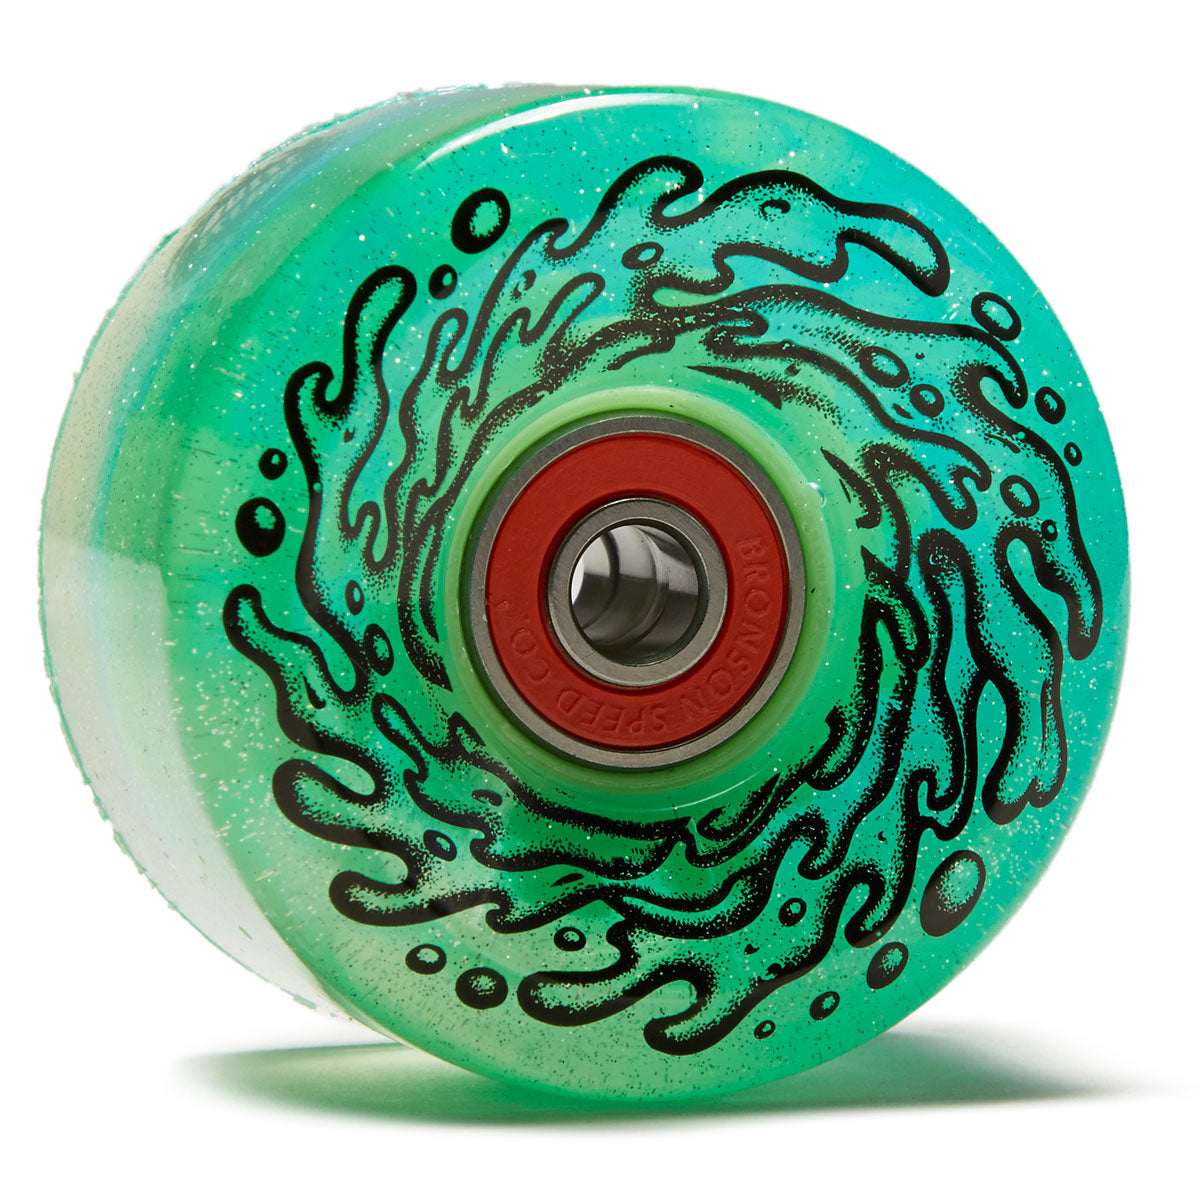 Slime Balls Light Ups OG Slime 78a Skateboard Wheels - Blue/Green Glit – CCS